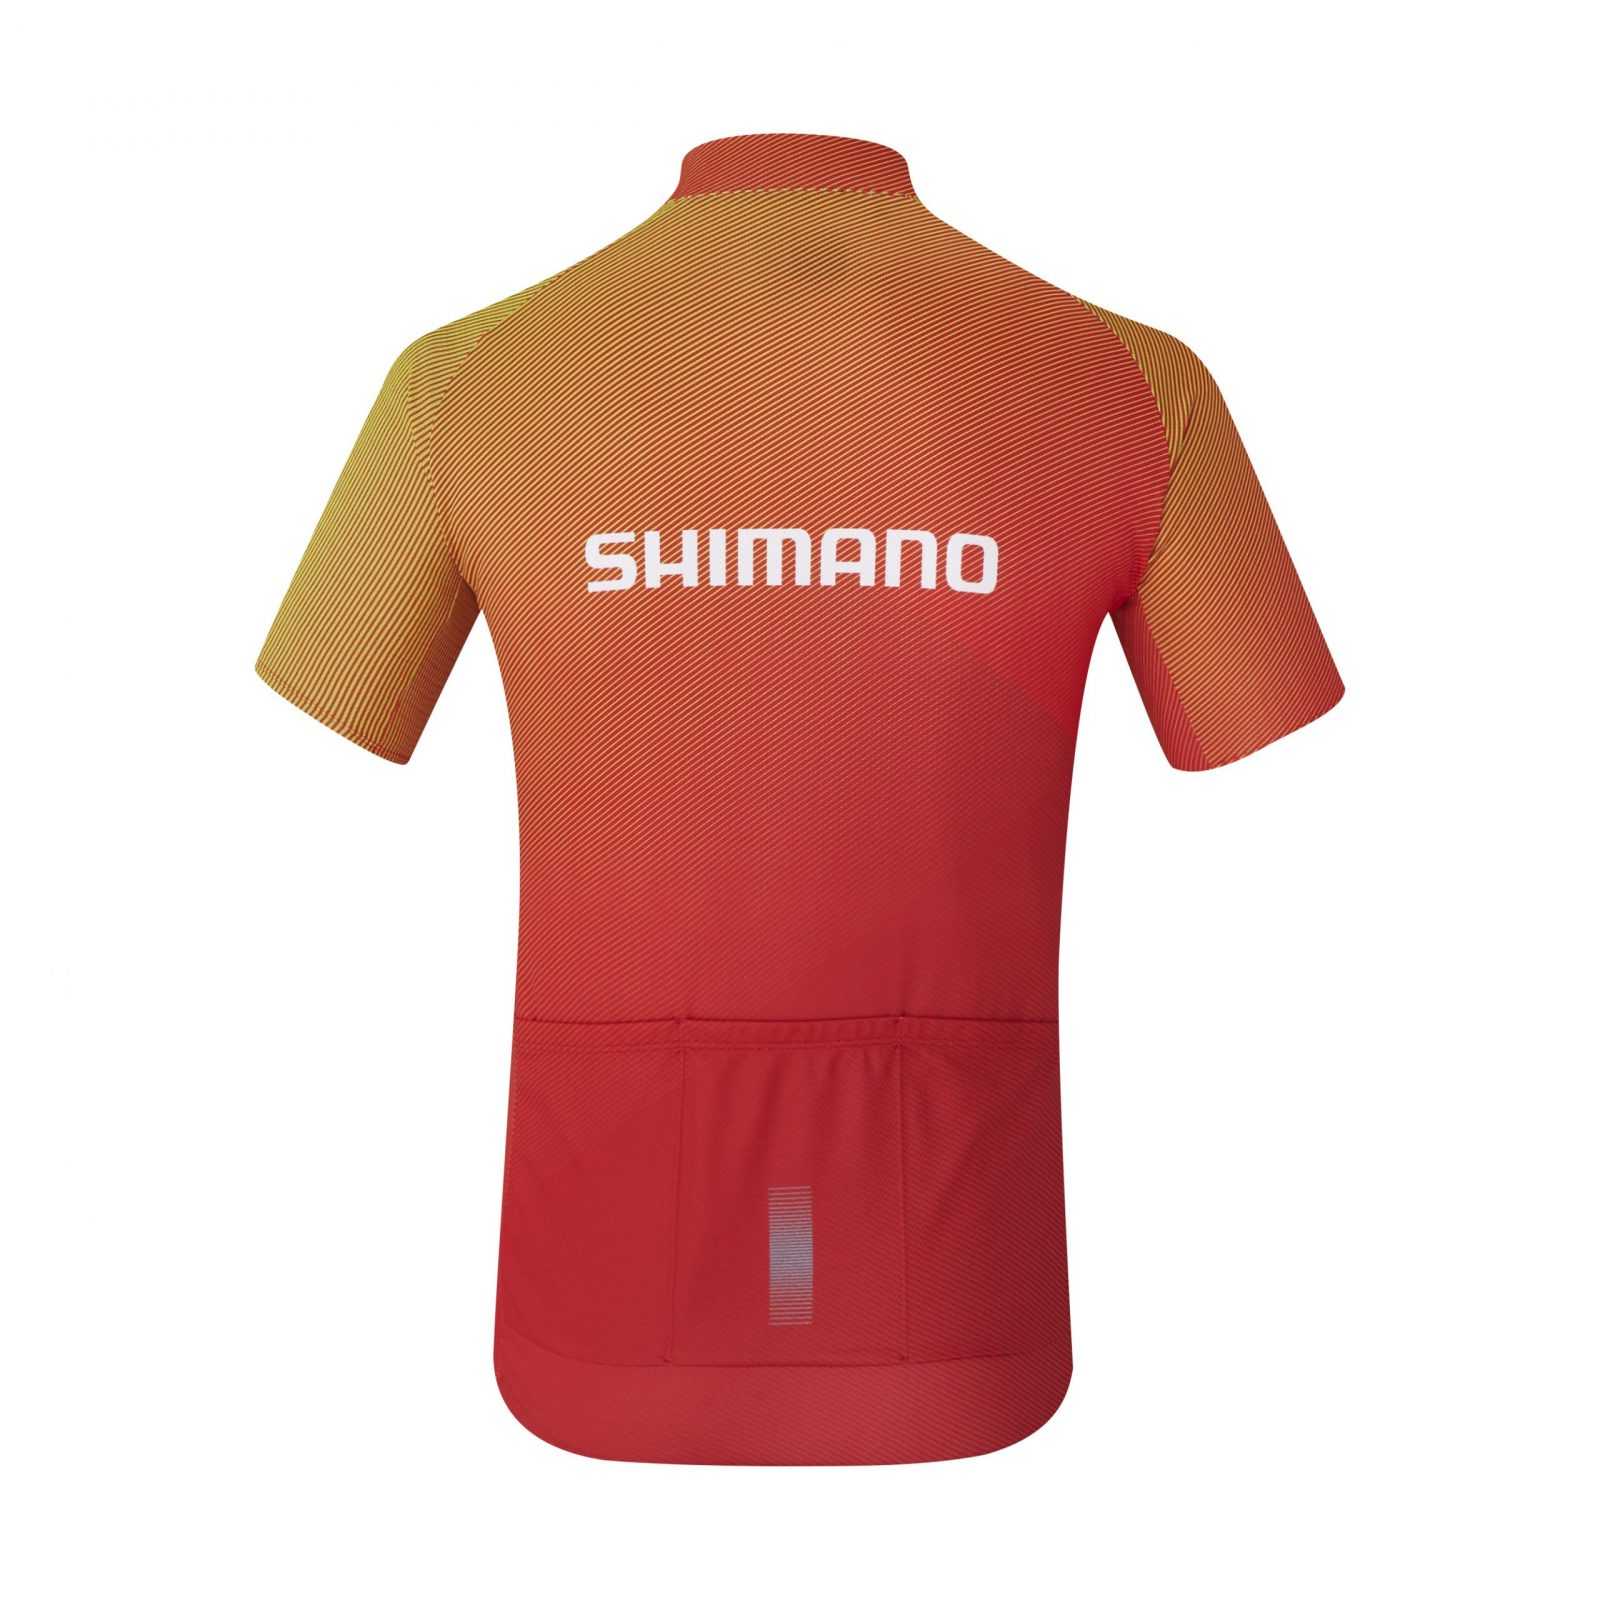 velodzhers-shimano-team2-chervone-rozm-xl5caf3a2b339c2-original.jpg